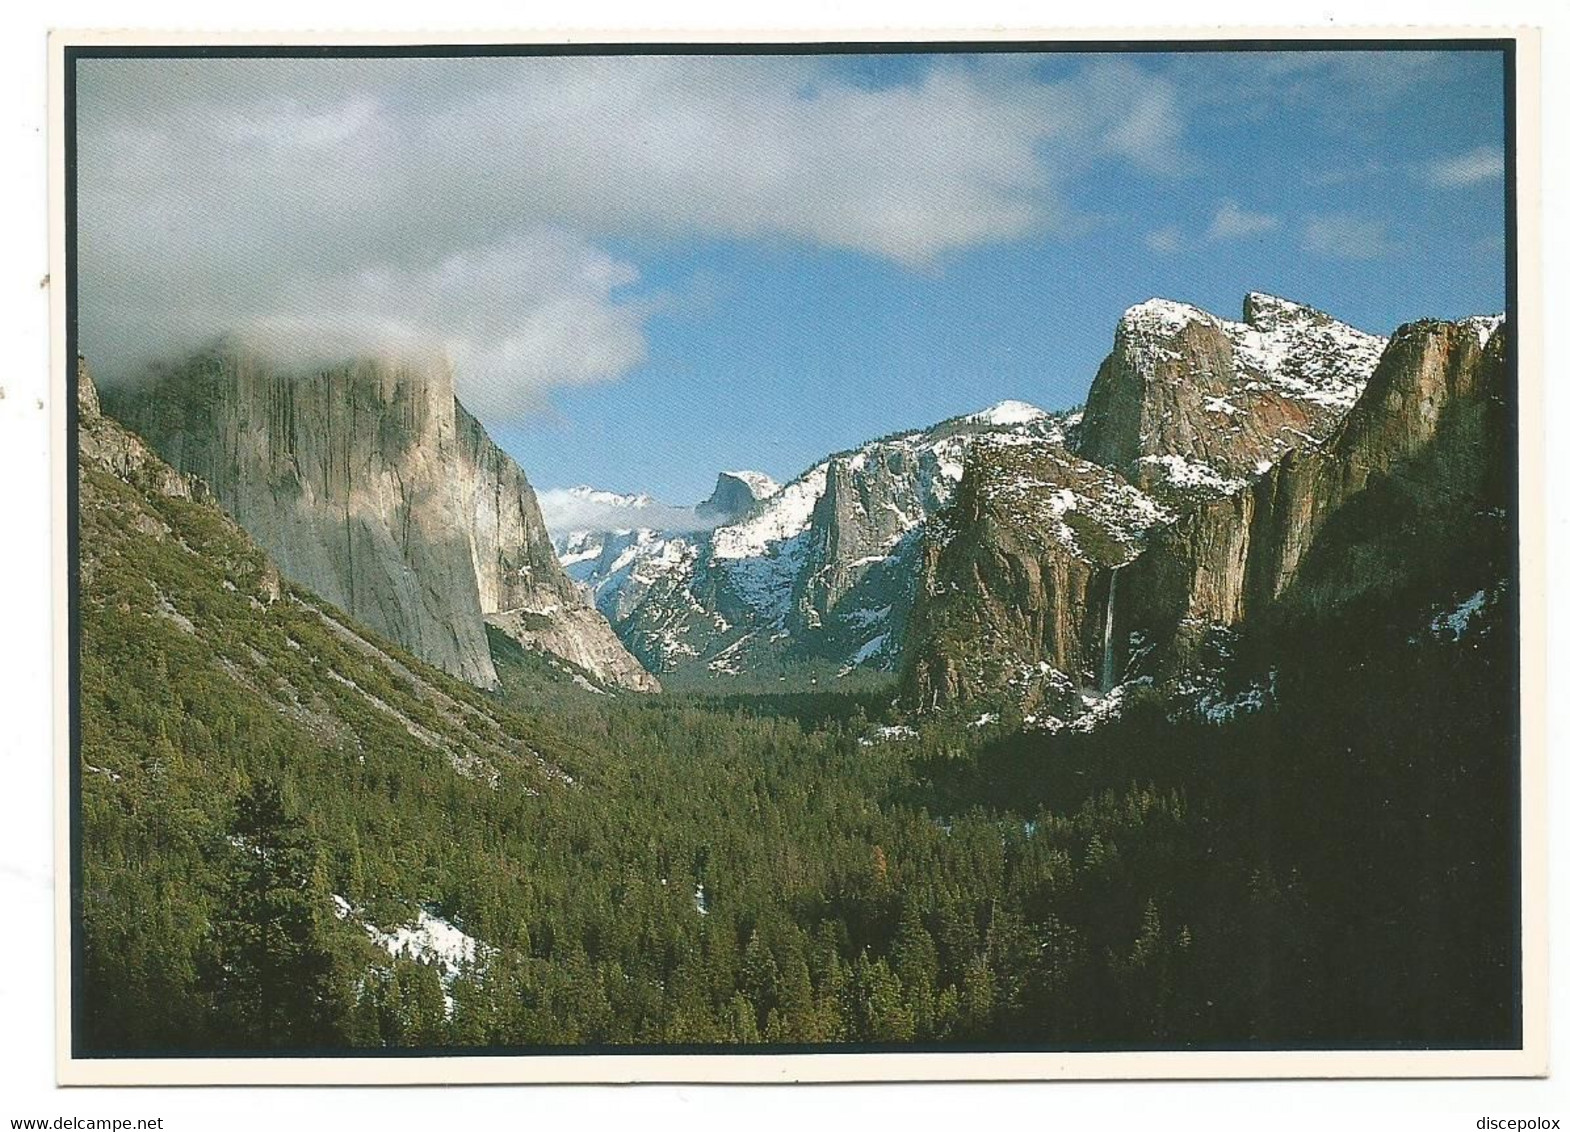 AA4155 California - Yosemite National Park - Valley View / Non Viaggiata - Yosemite